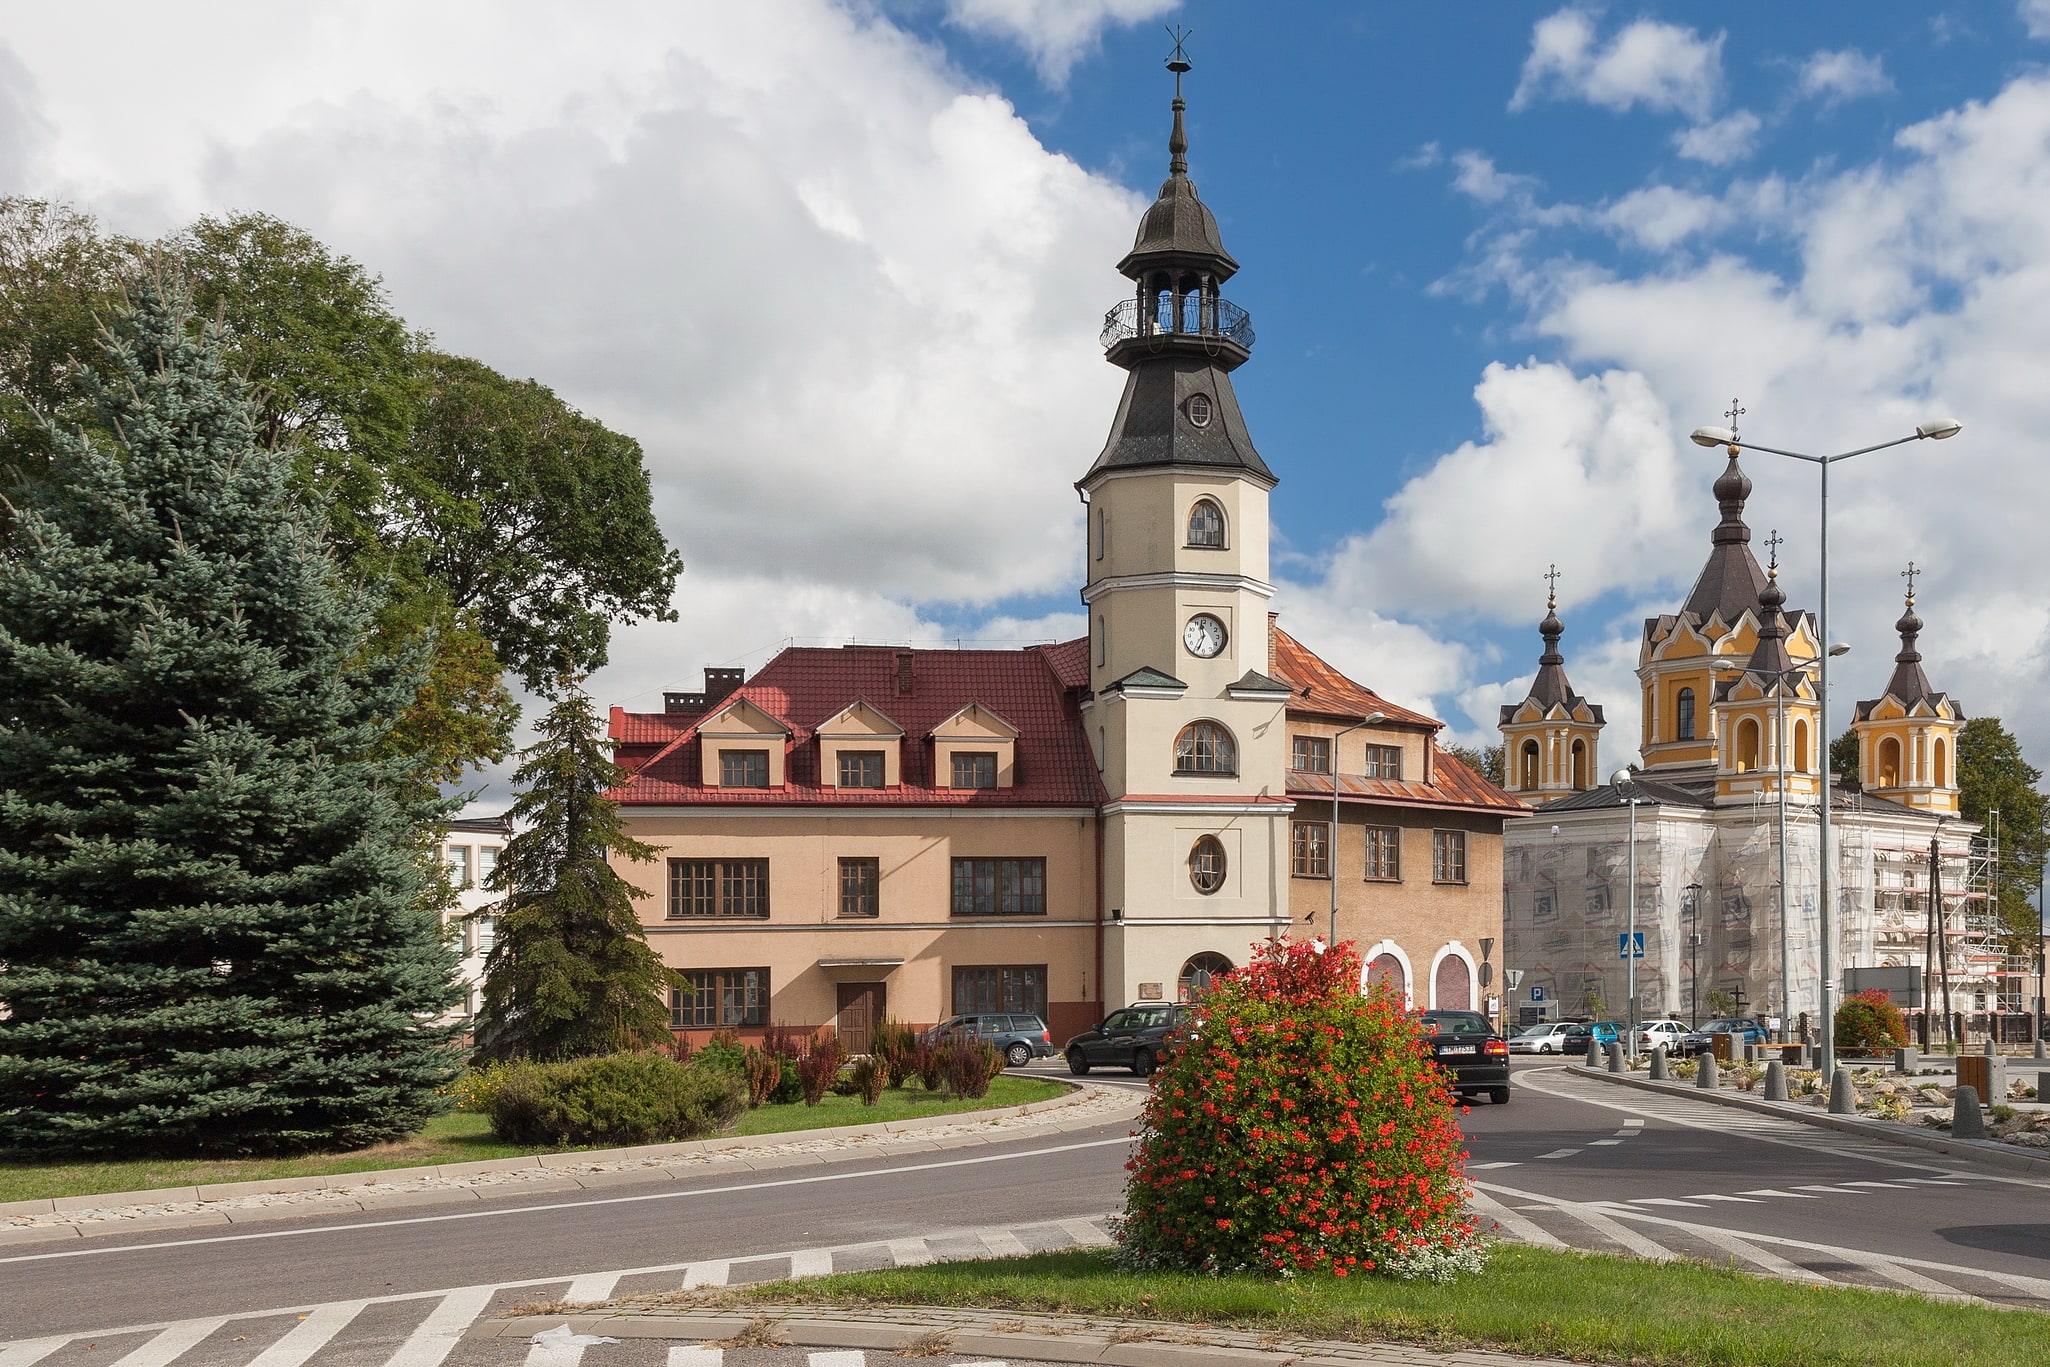 Tomaszów Lubelski, Poland